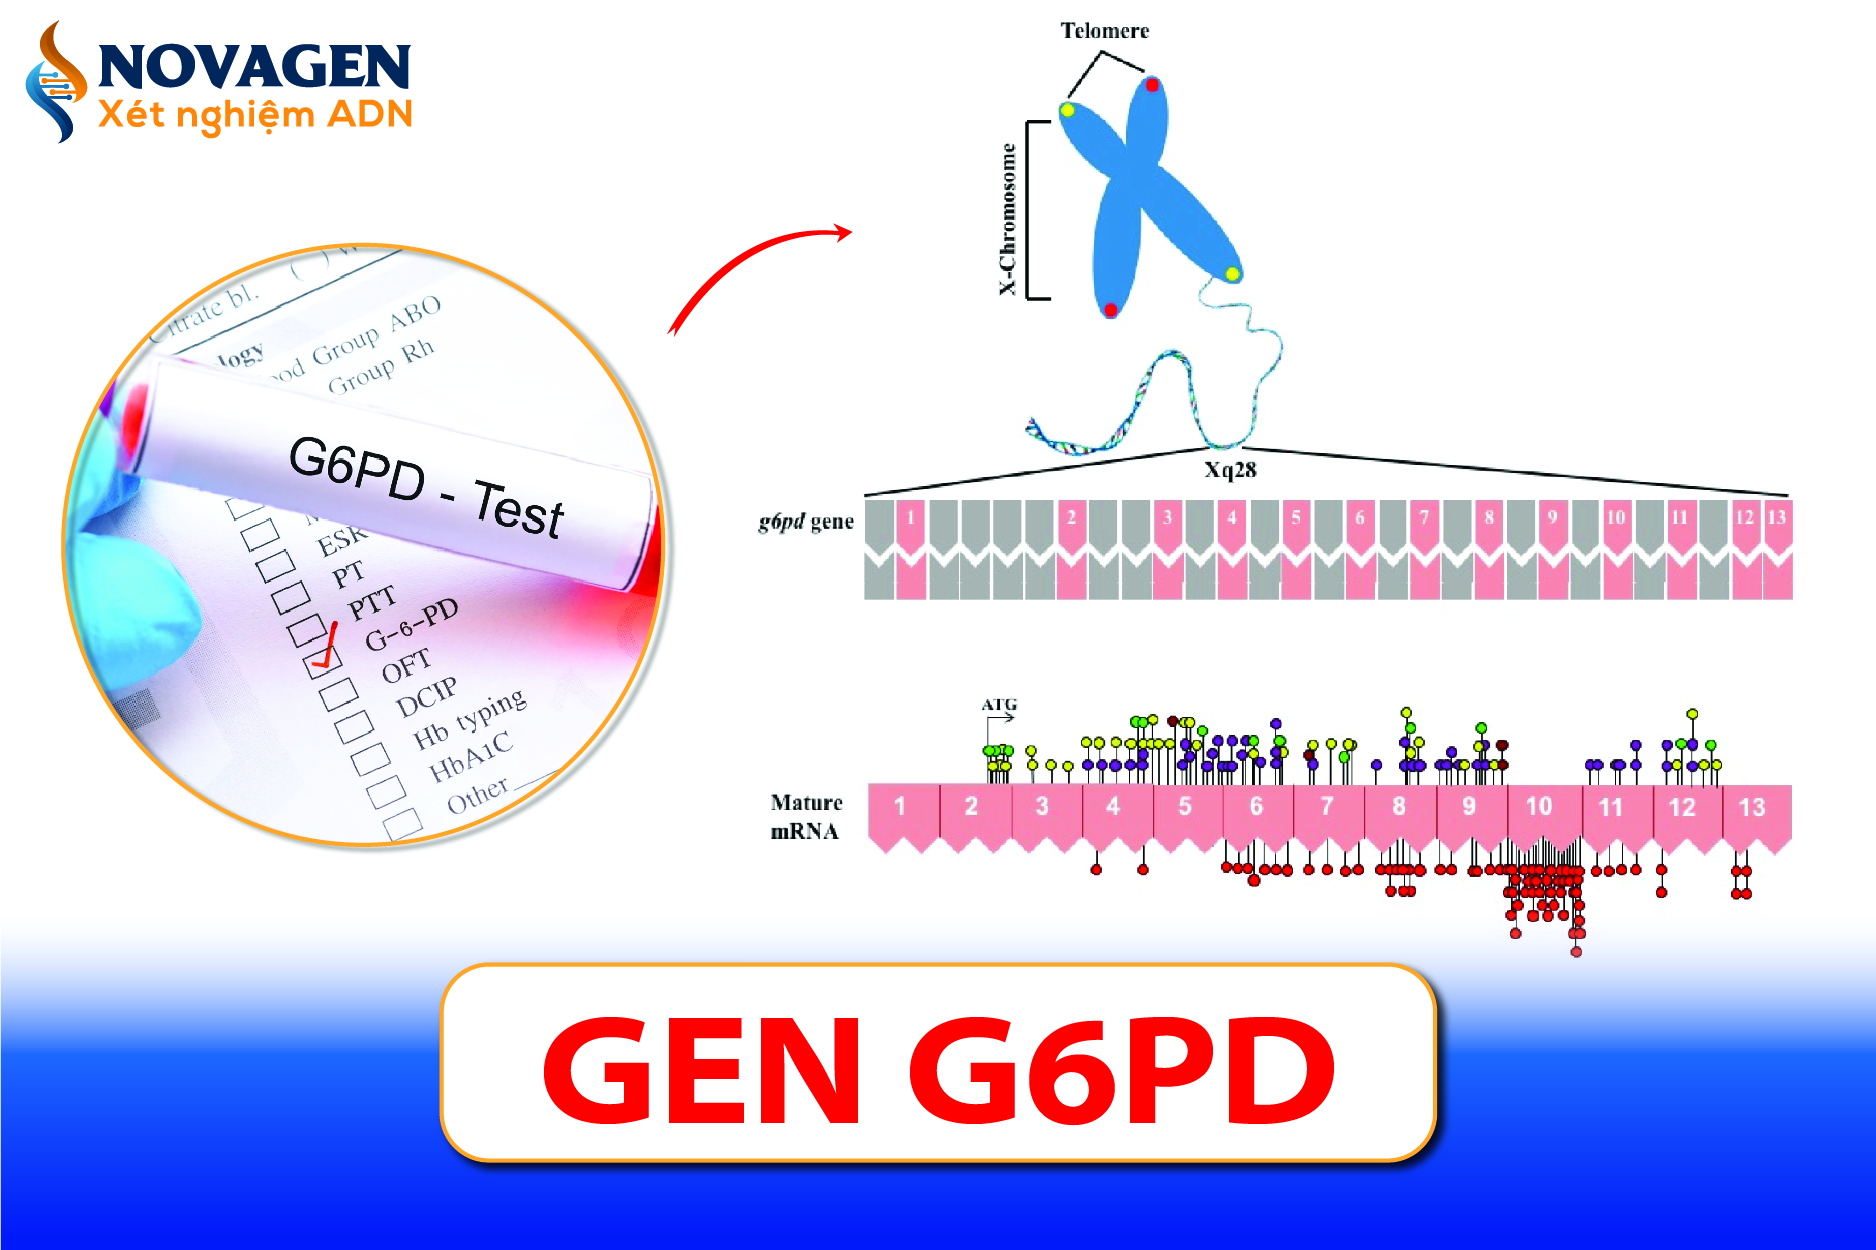 Gen G6PD